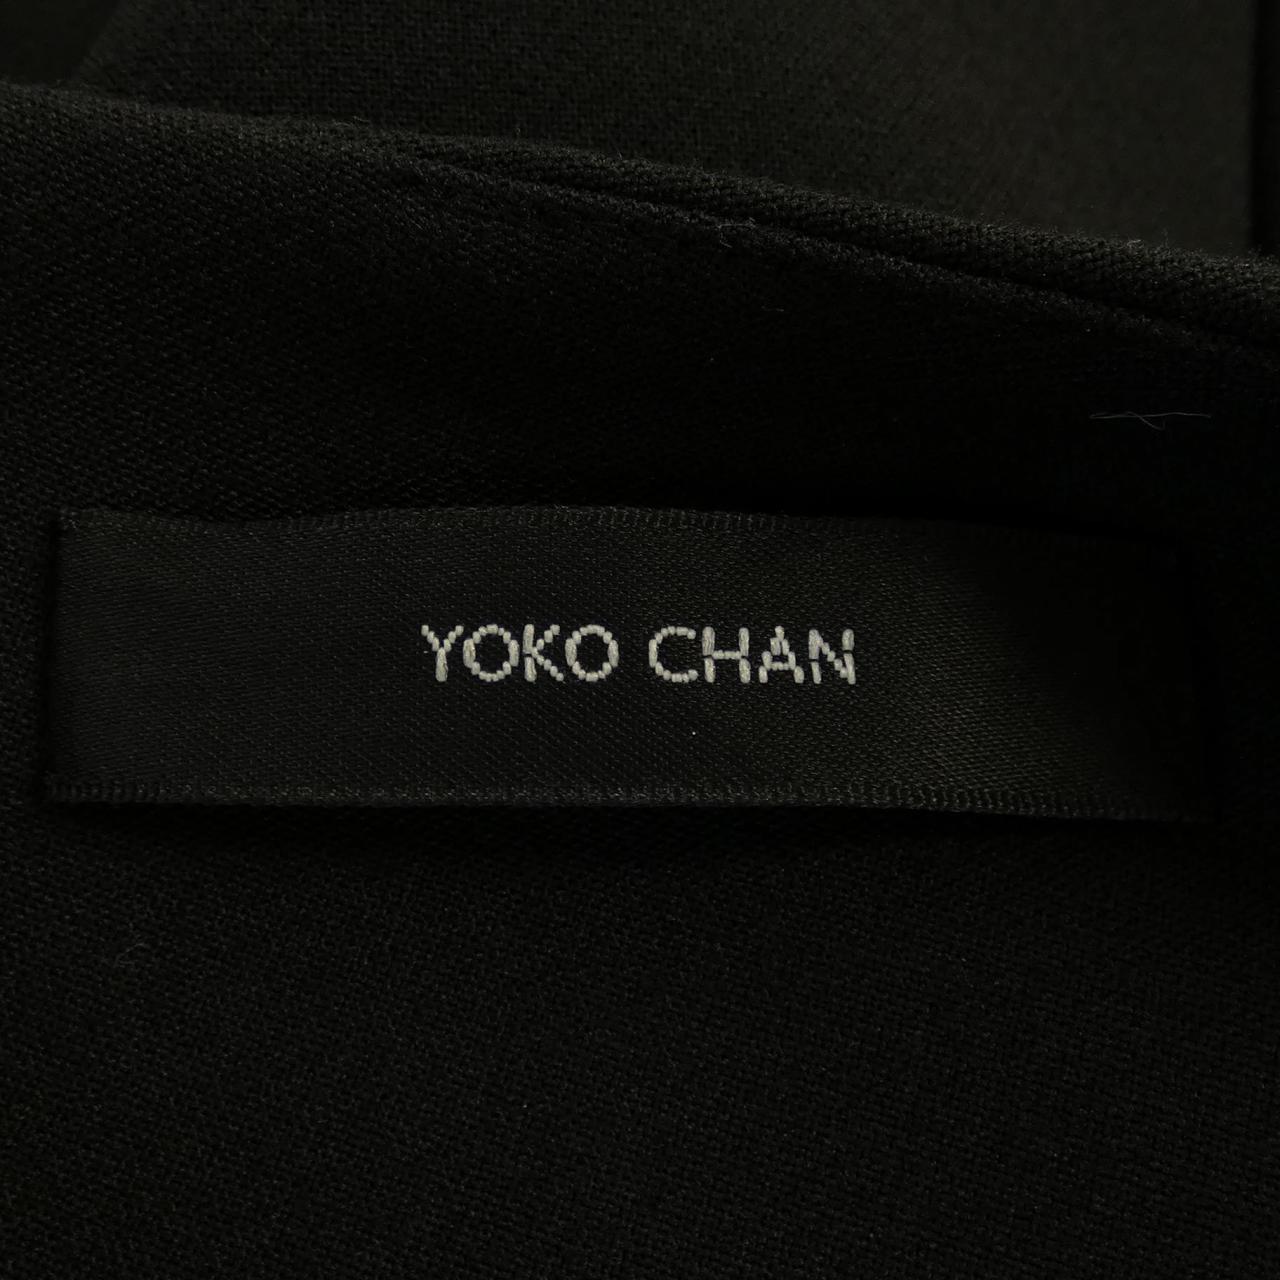 Yoko Chan YOKO CHAN dress